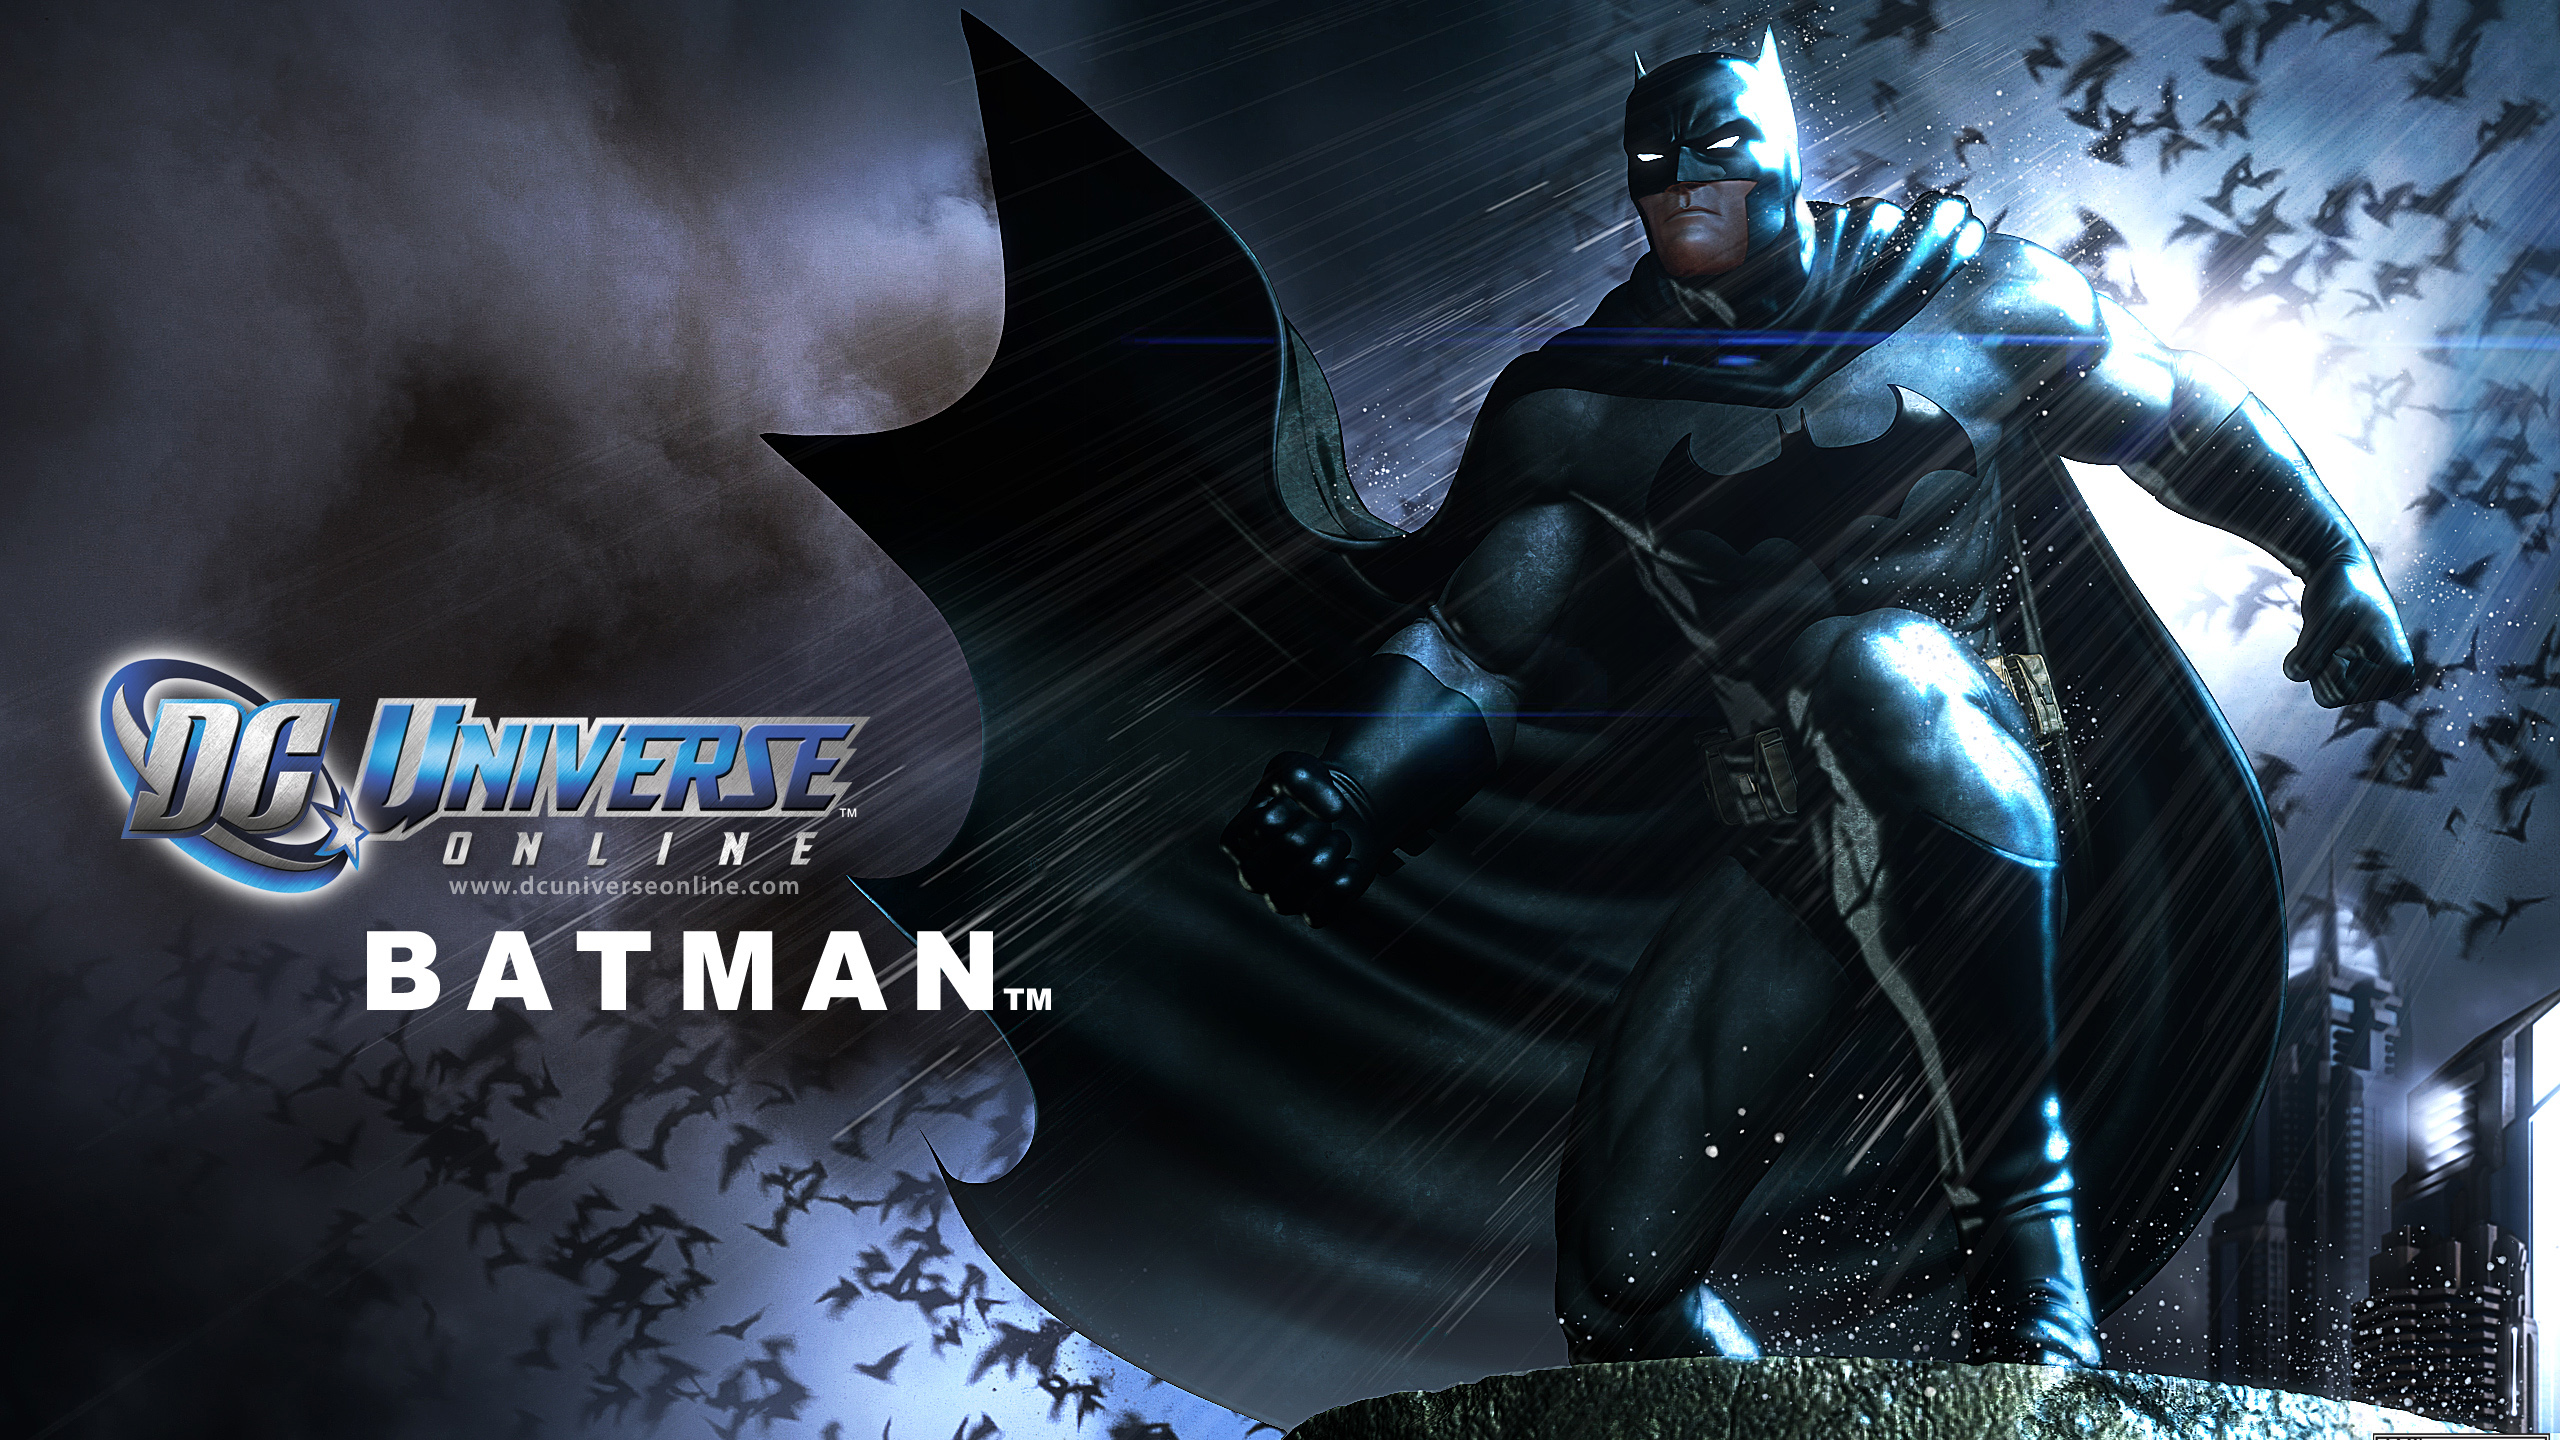 Batman In Dc Universe Online Wallpaper HD